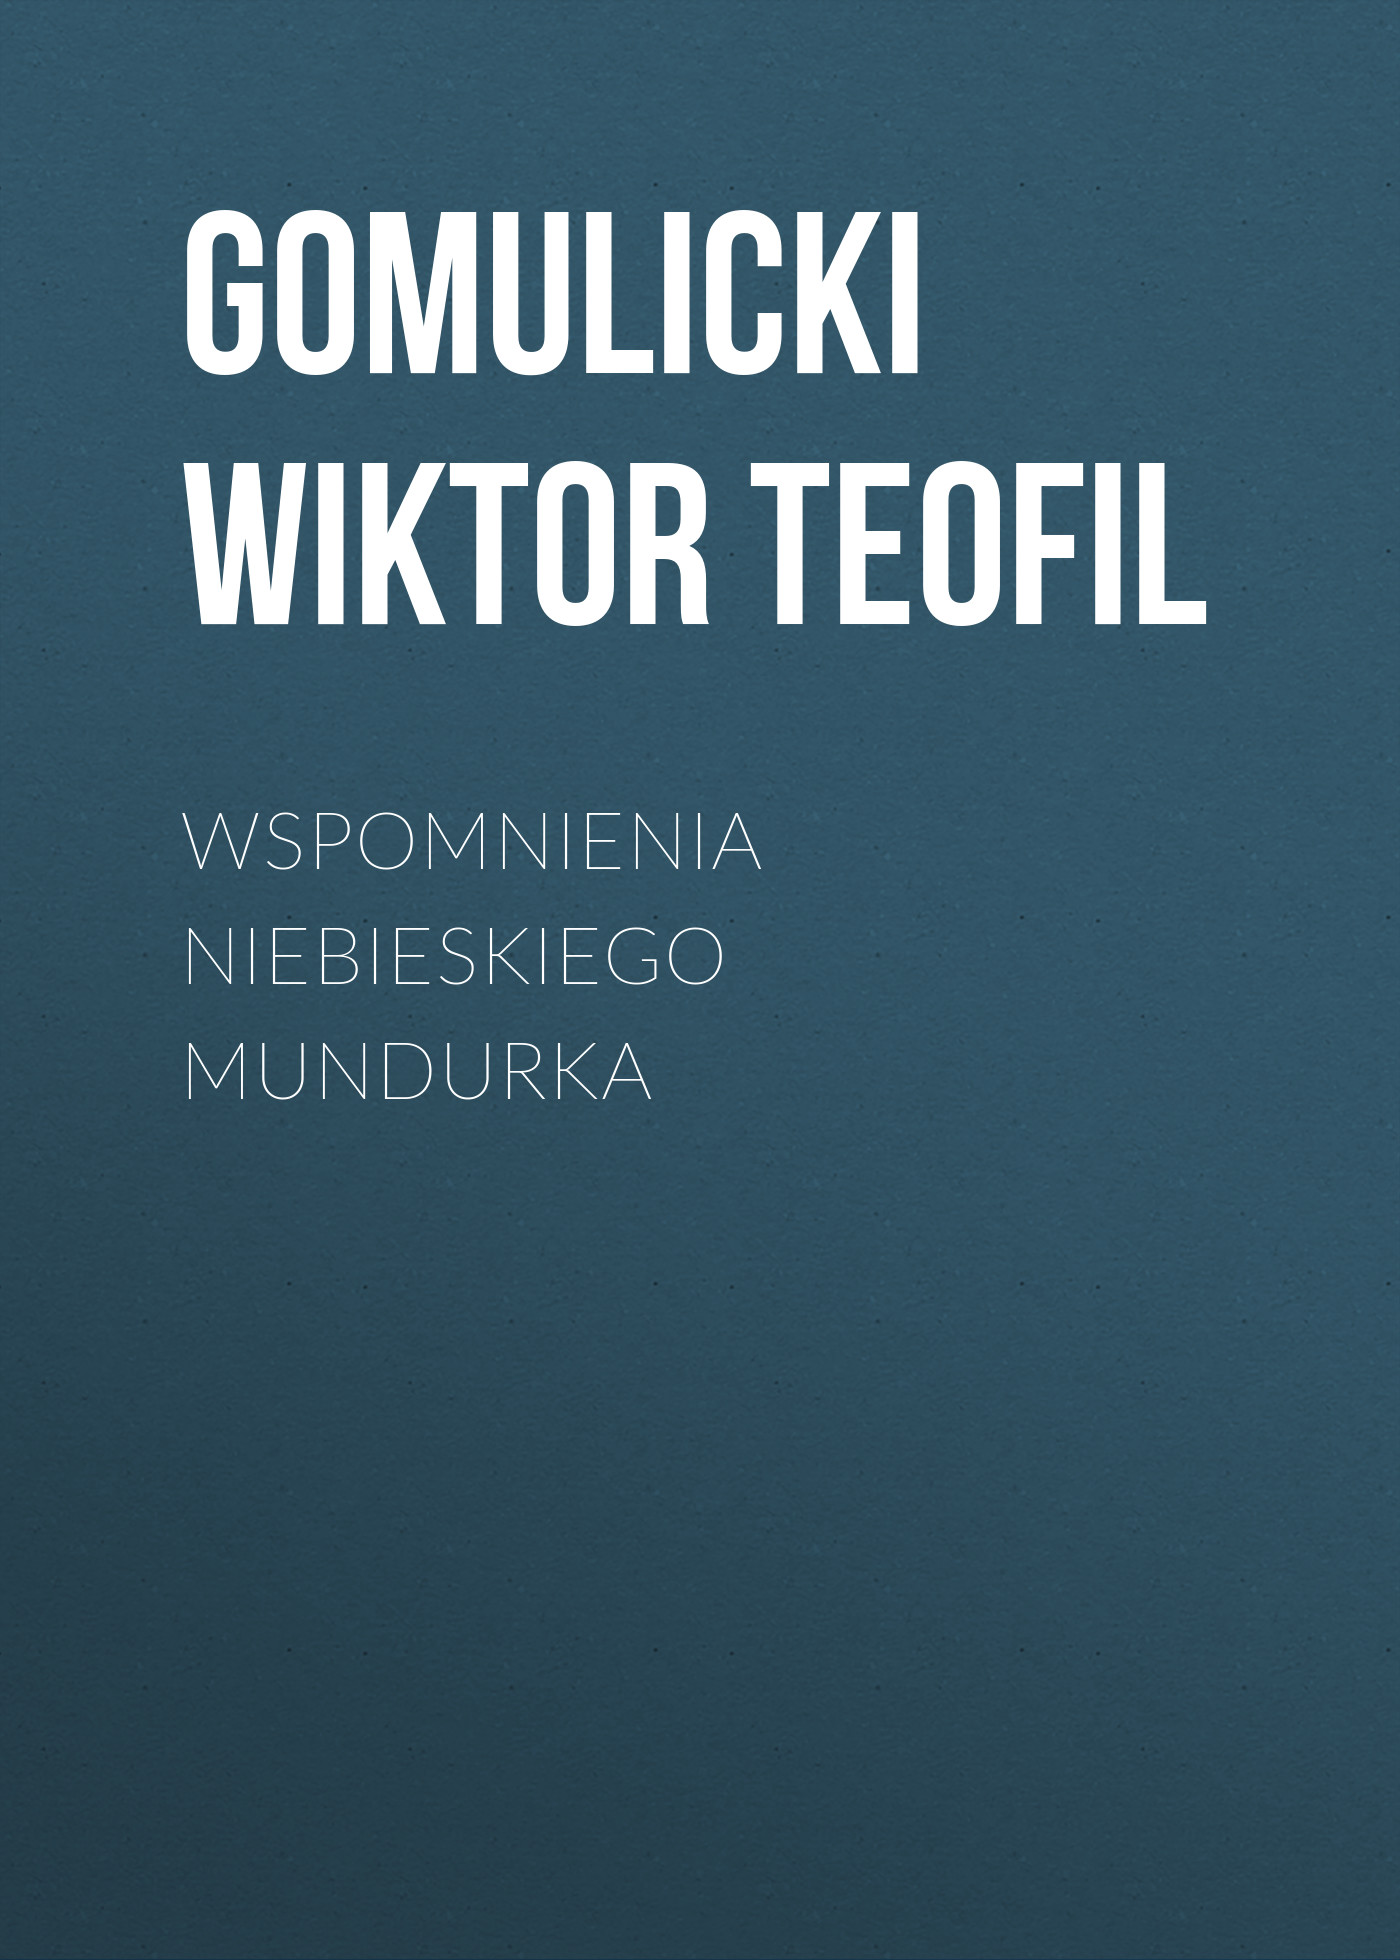 Скачать Wspomnienia niebieskiego mundurka - Gomulicki Wiktor Teofil